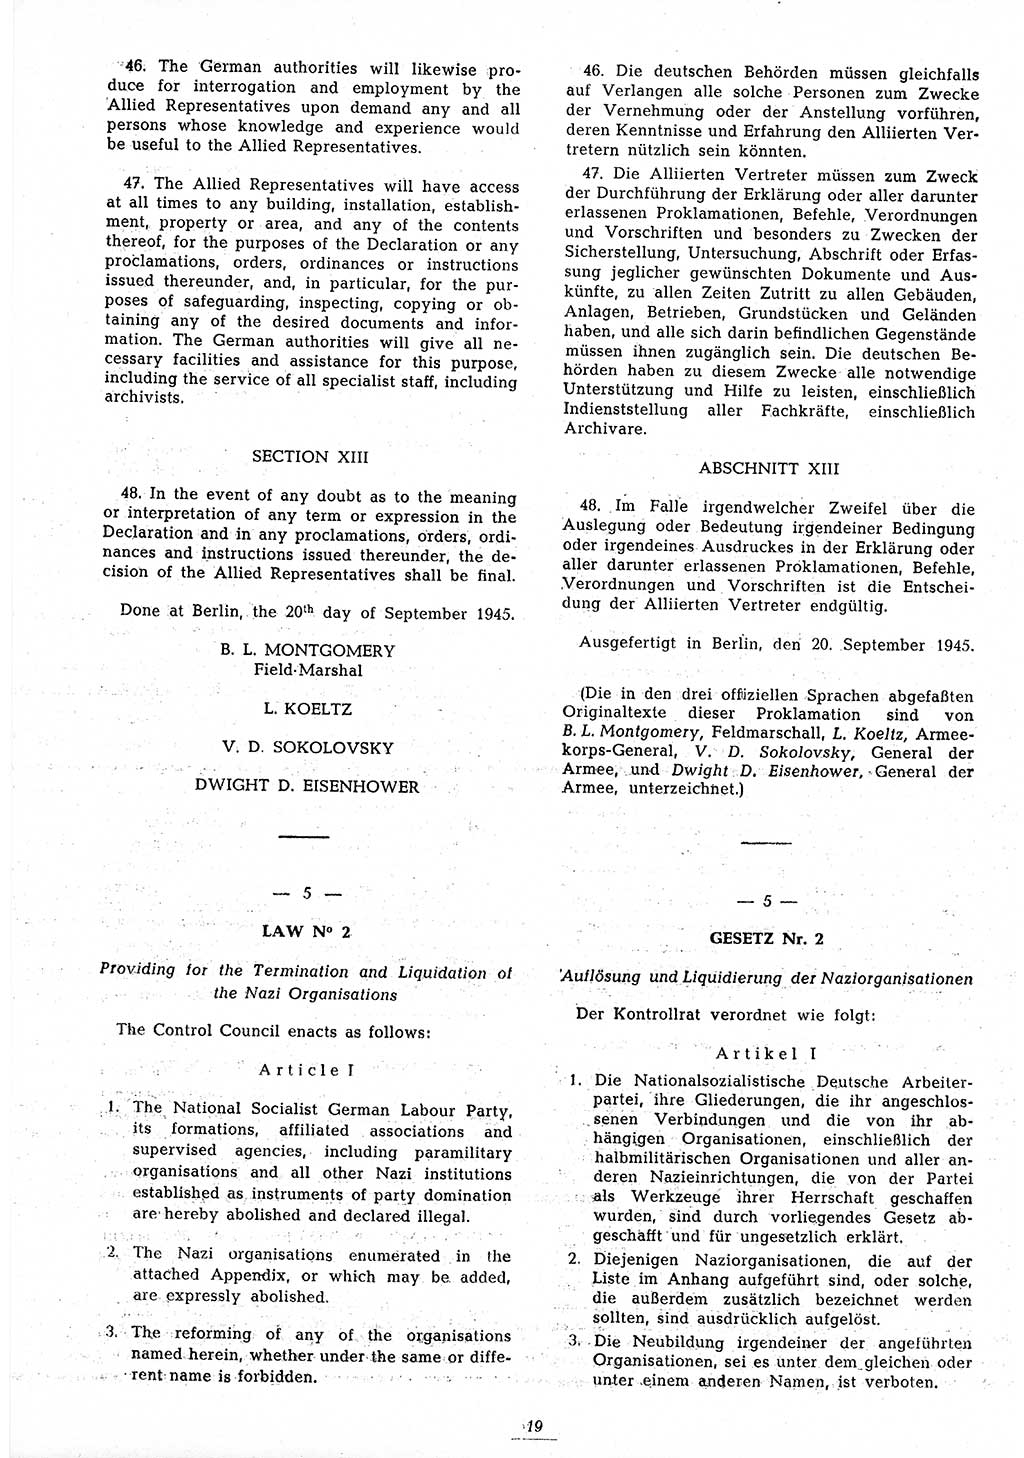 Amtsblatt des Kontrollrats (ABlKR) in Deutschland 1945, Seite 19/2 (ABlKR Dtl. 1945, S. 19/2)